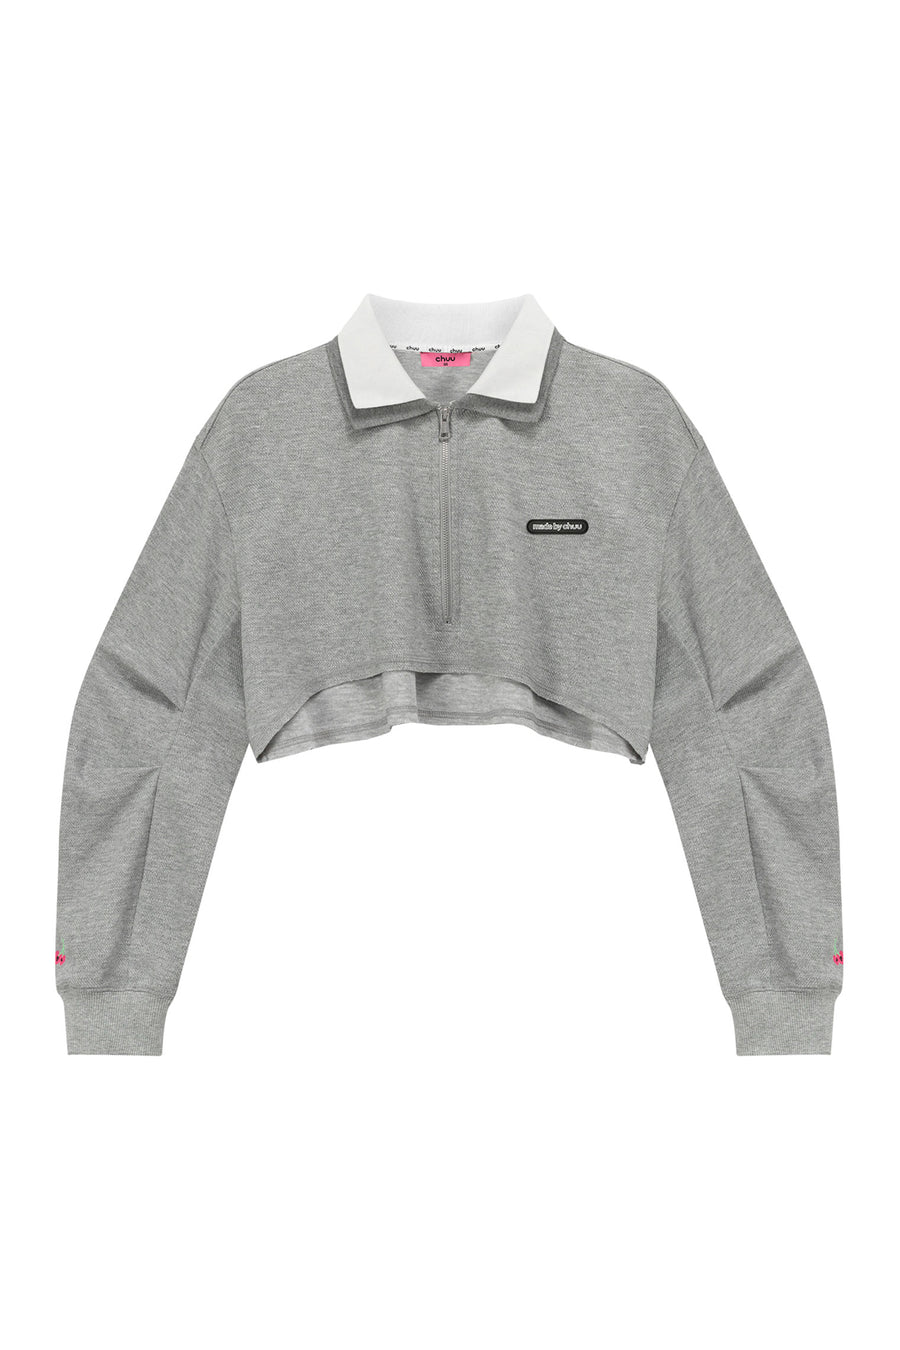 CHUU Color Matching Collar Crop Sweatshirt